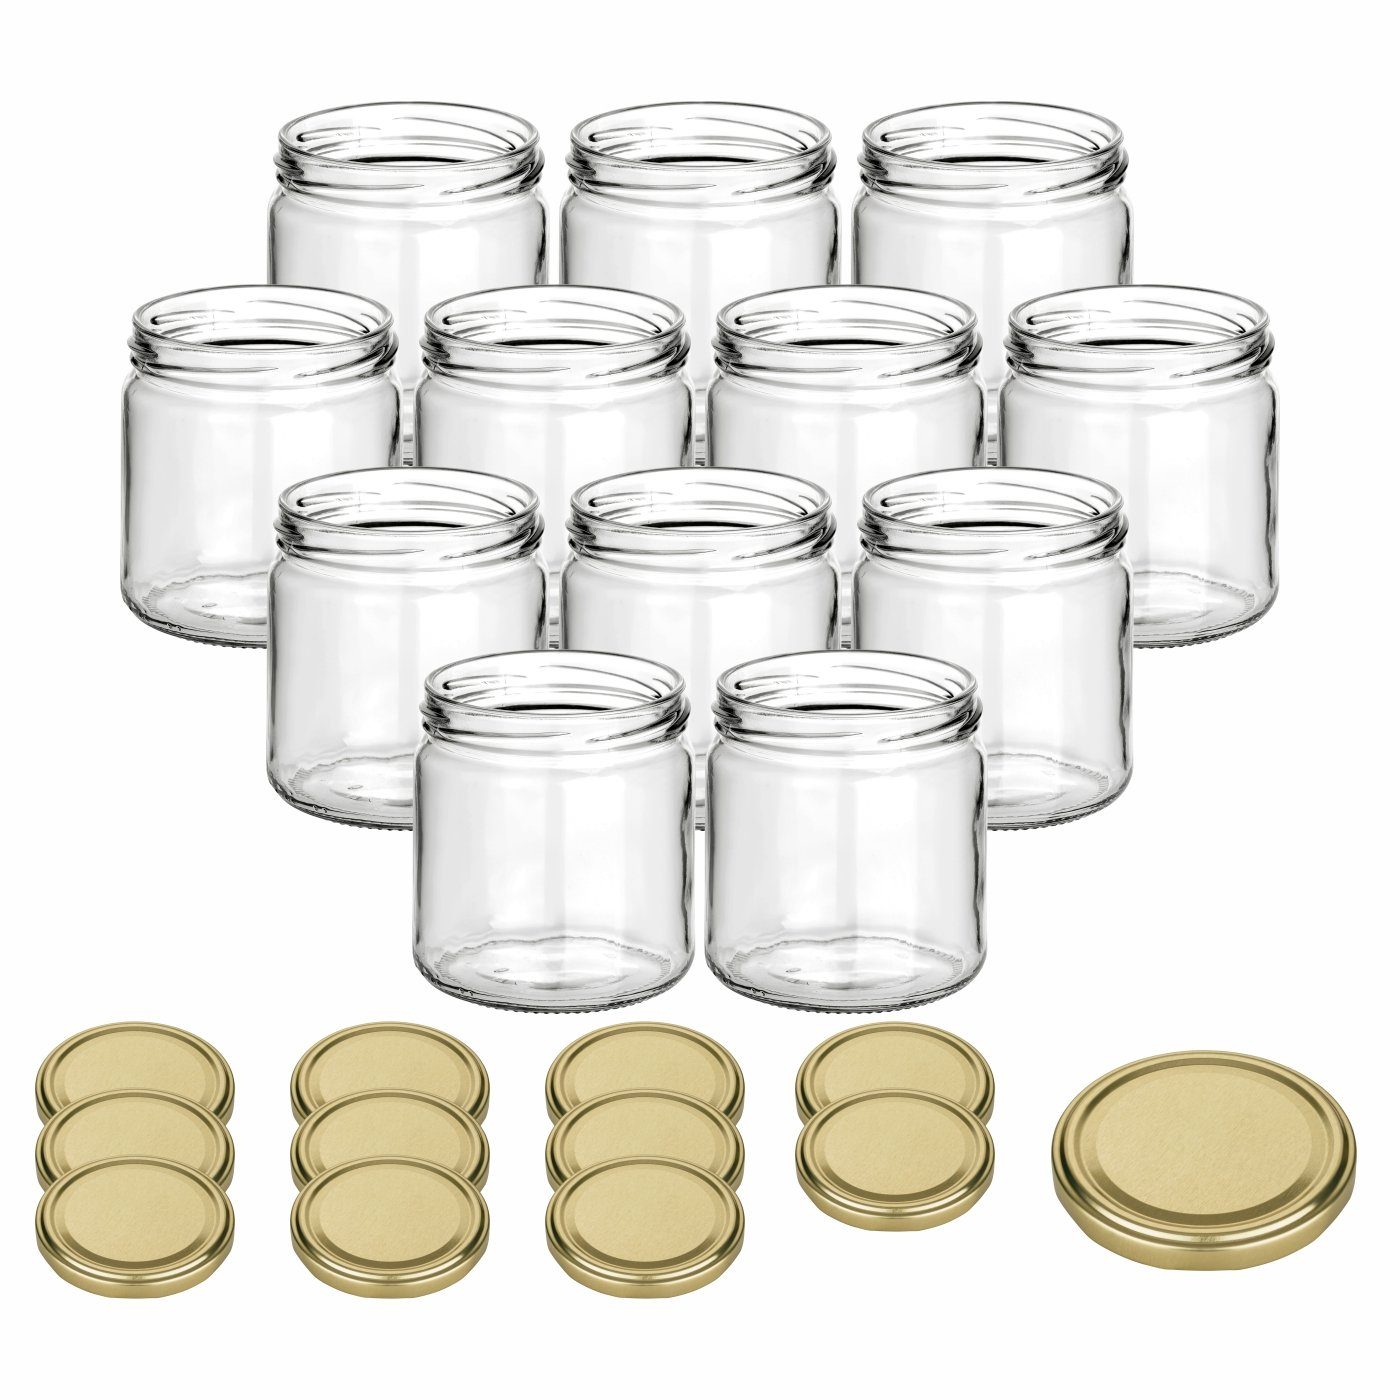 gouveo Honigglas 500g mit Schraub-Deckel - Leere Vorratsgläser 405 ml für Honig, Metall TO82 goldfarben, (12-tlg) | Honiggläser